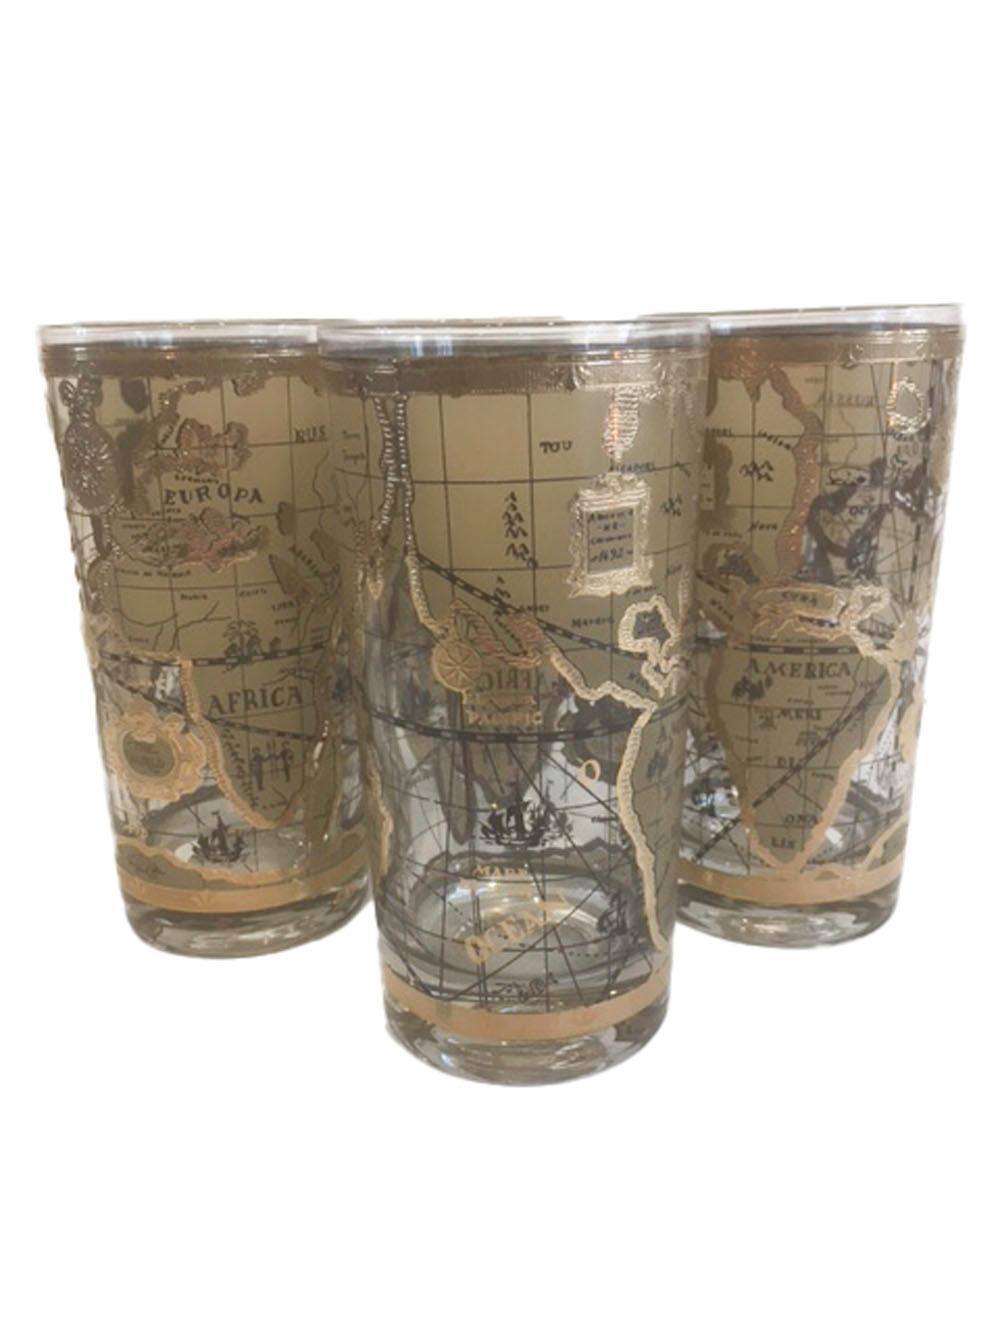 6 Verres Highball Vintage de CERA Glassware décorés d'une carte géographique de style ancien dans les tons tans et or sur verre transparent. Avec un caddy circulaire recouvert de vinyle et muni d'une poignée centrale.

Mesures : Caddy : 10